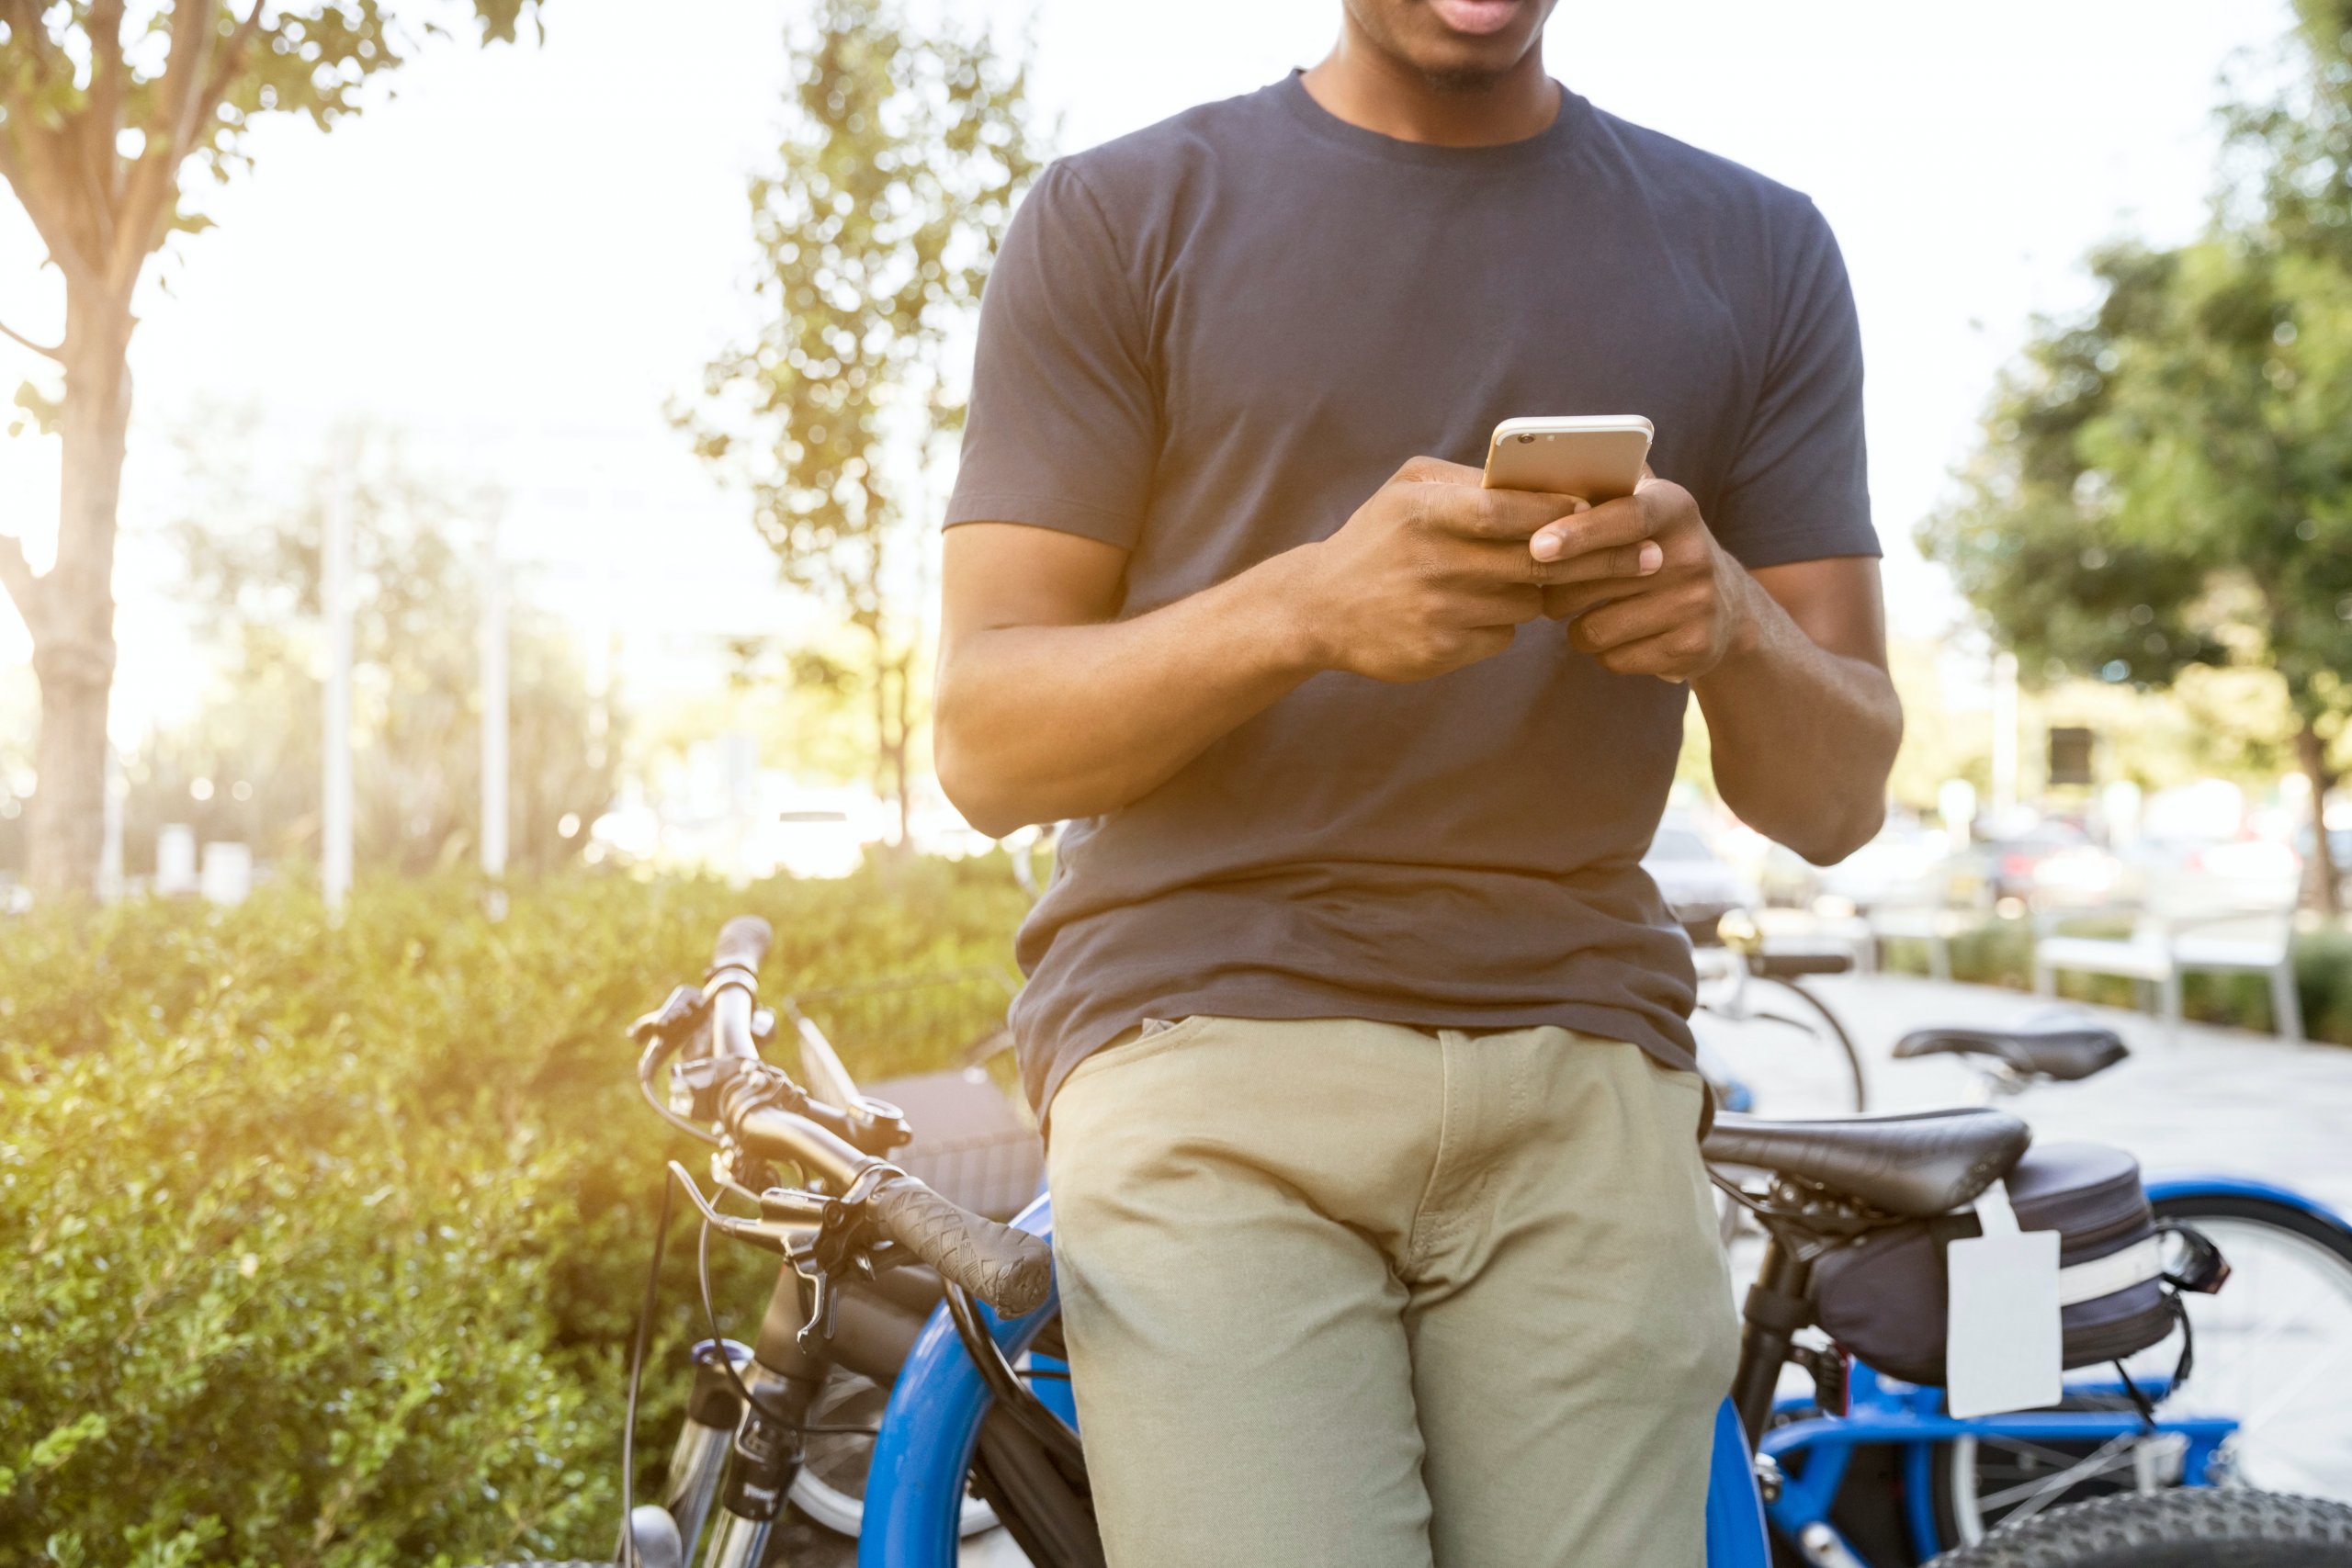 Pessoa Apoiada Em Uma Bicicleta Enquanto Segura Um Smartphone. Imagem disponível no Pexels